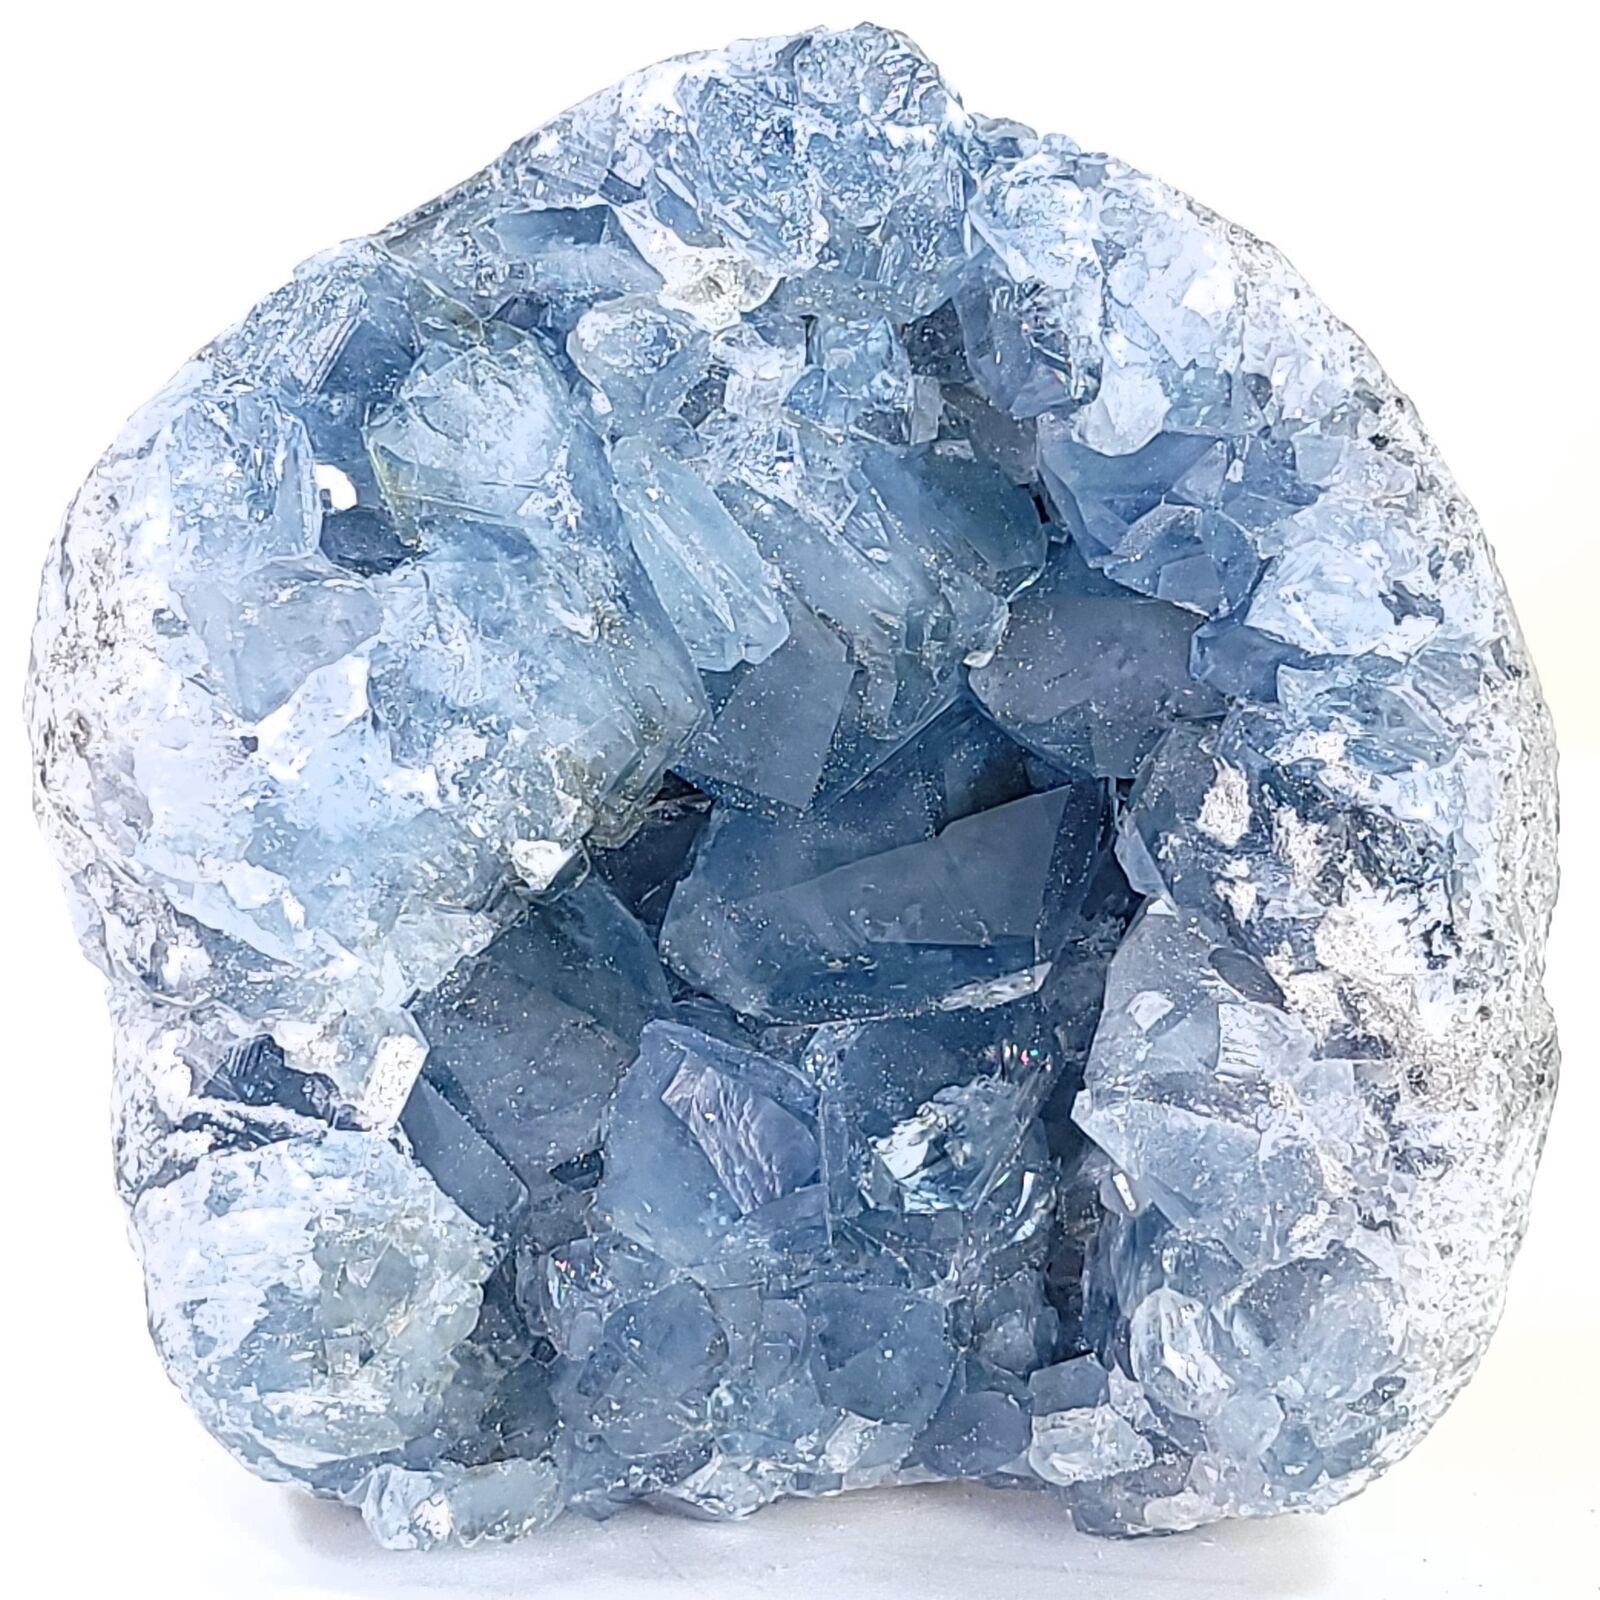 Celestite Crystal Cluster Geode Large 6.4 Lbs Gemmy Heavenly Blue Celestine Gem